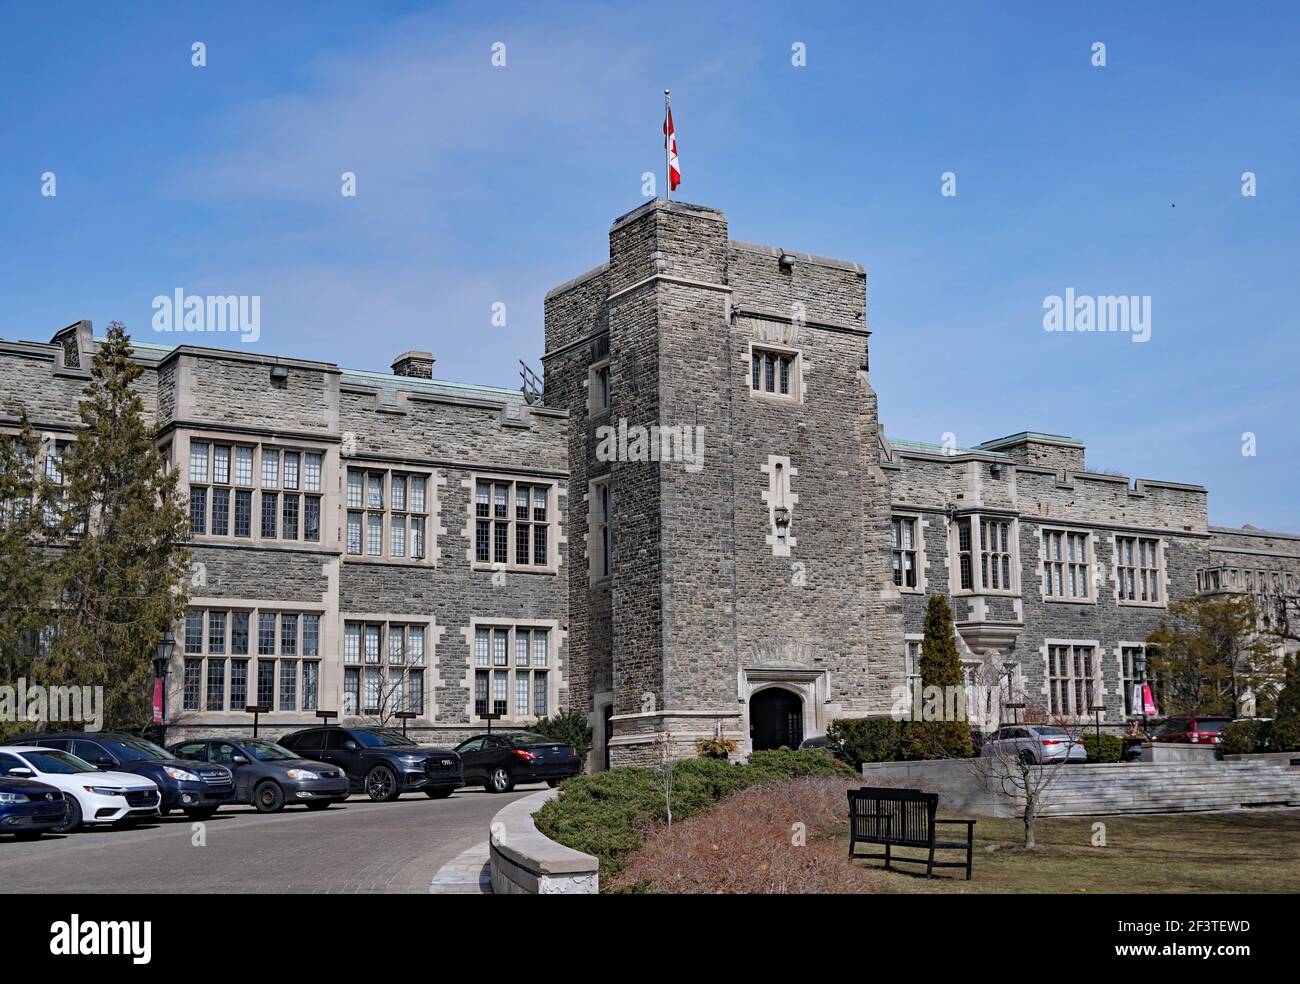 Toronto, Canadá - 16 de marzo de 2021: La impresionante fachada gótica de piedra de la Escuela Bishop Strachan, una prestigiosa escuela secundaria privada para niñas. Foto de stock